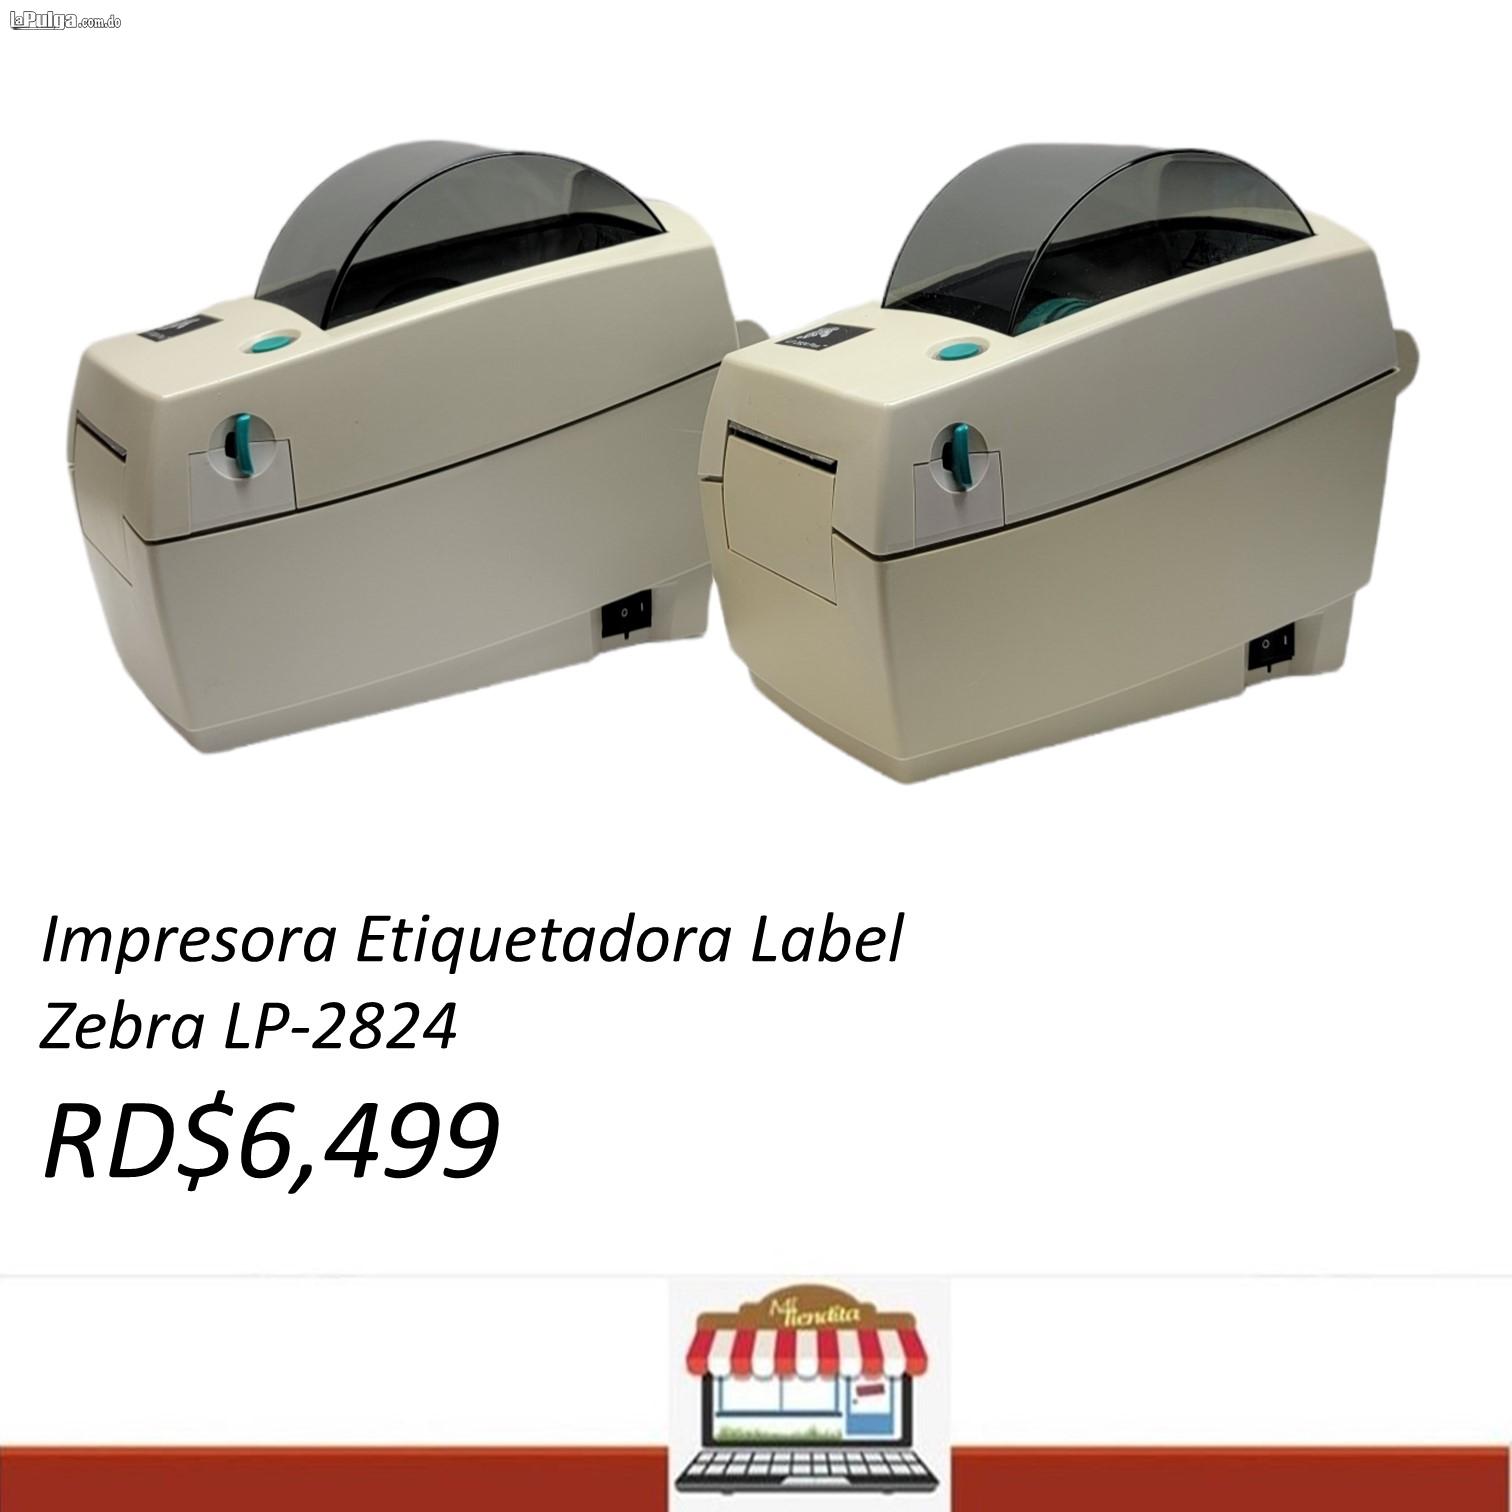 Impresora Etiquetadora Label Zebra LP-2824 Termica codigo de barras Foto 7104579-3.jpg